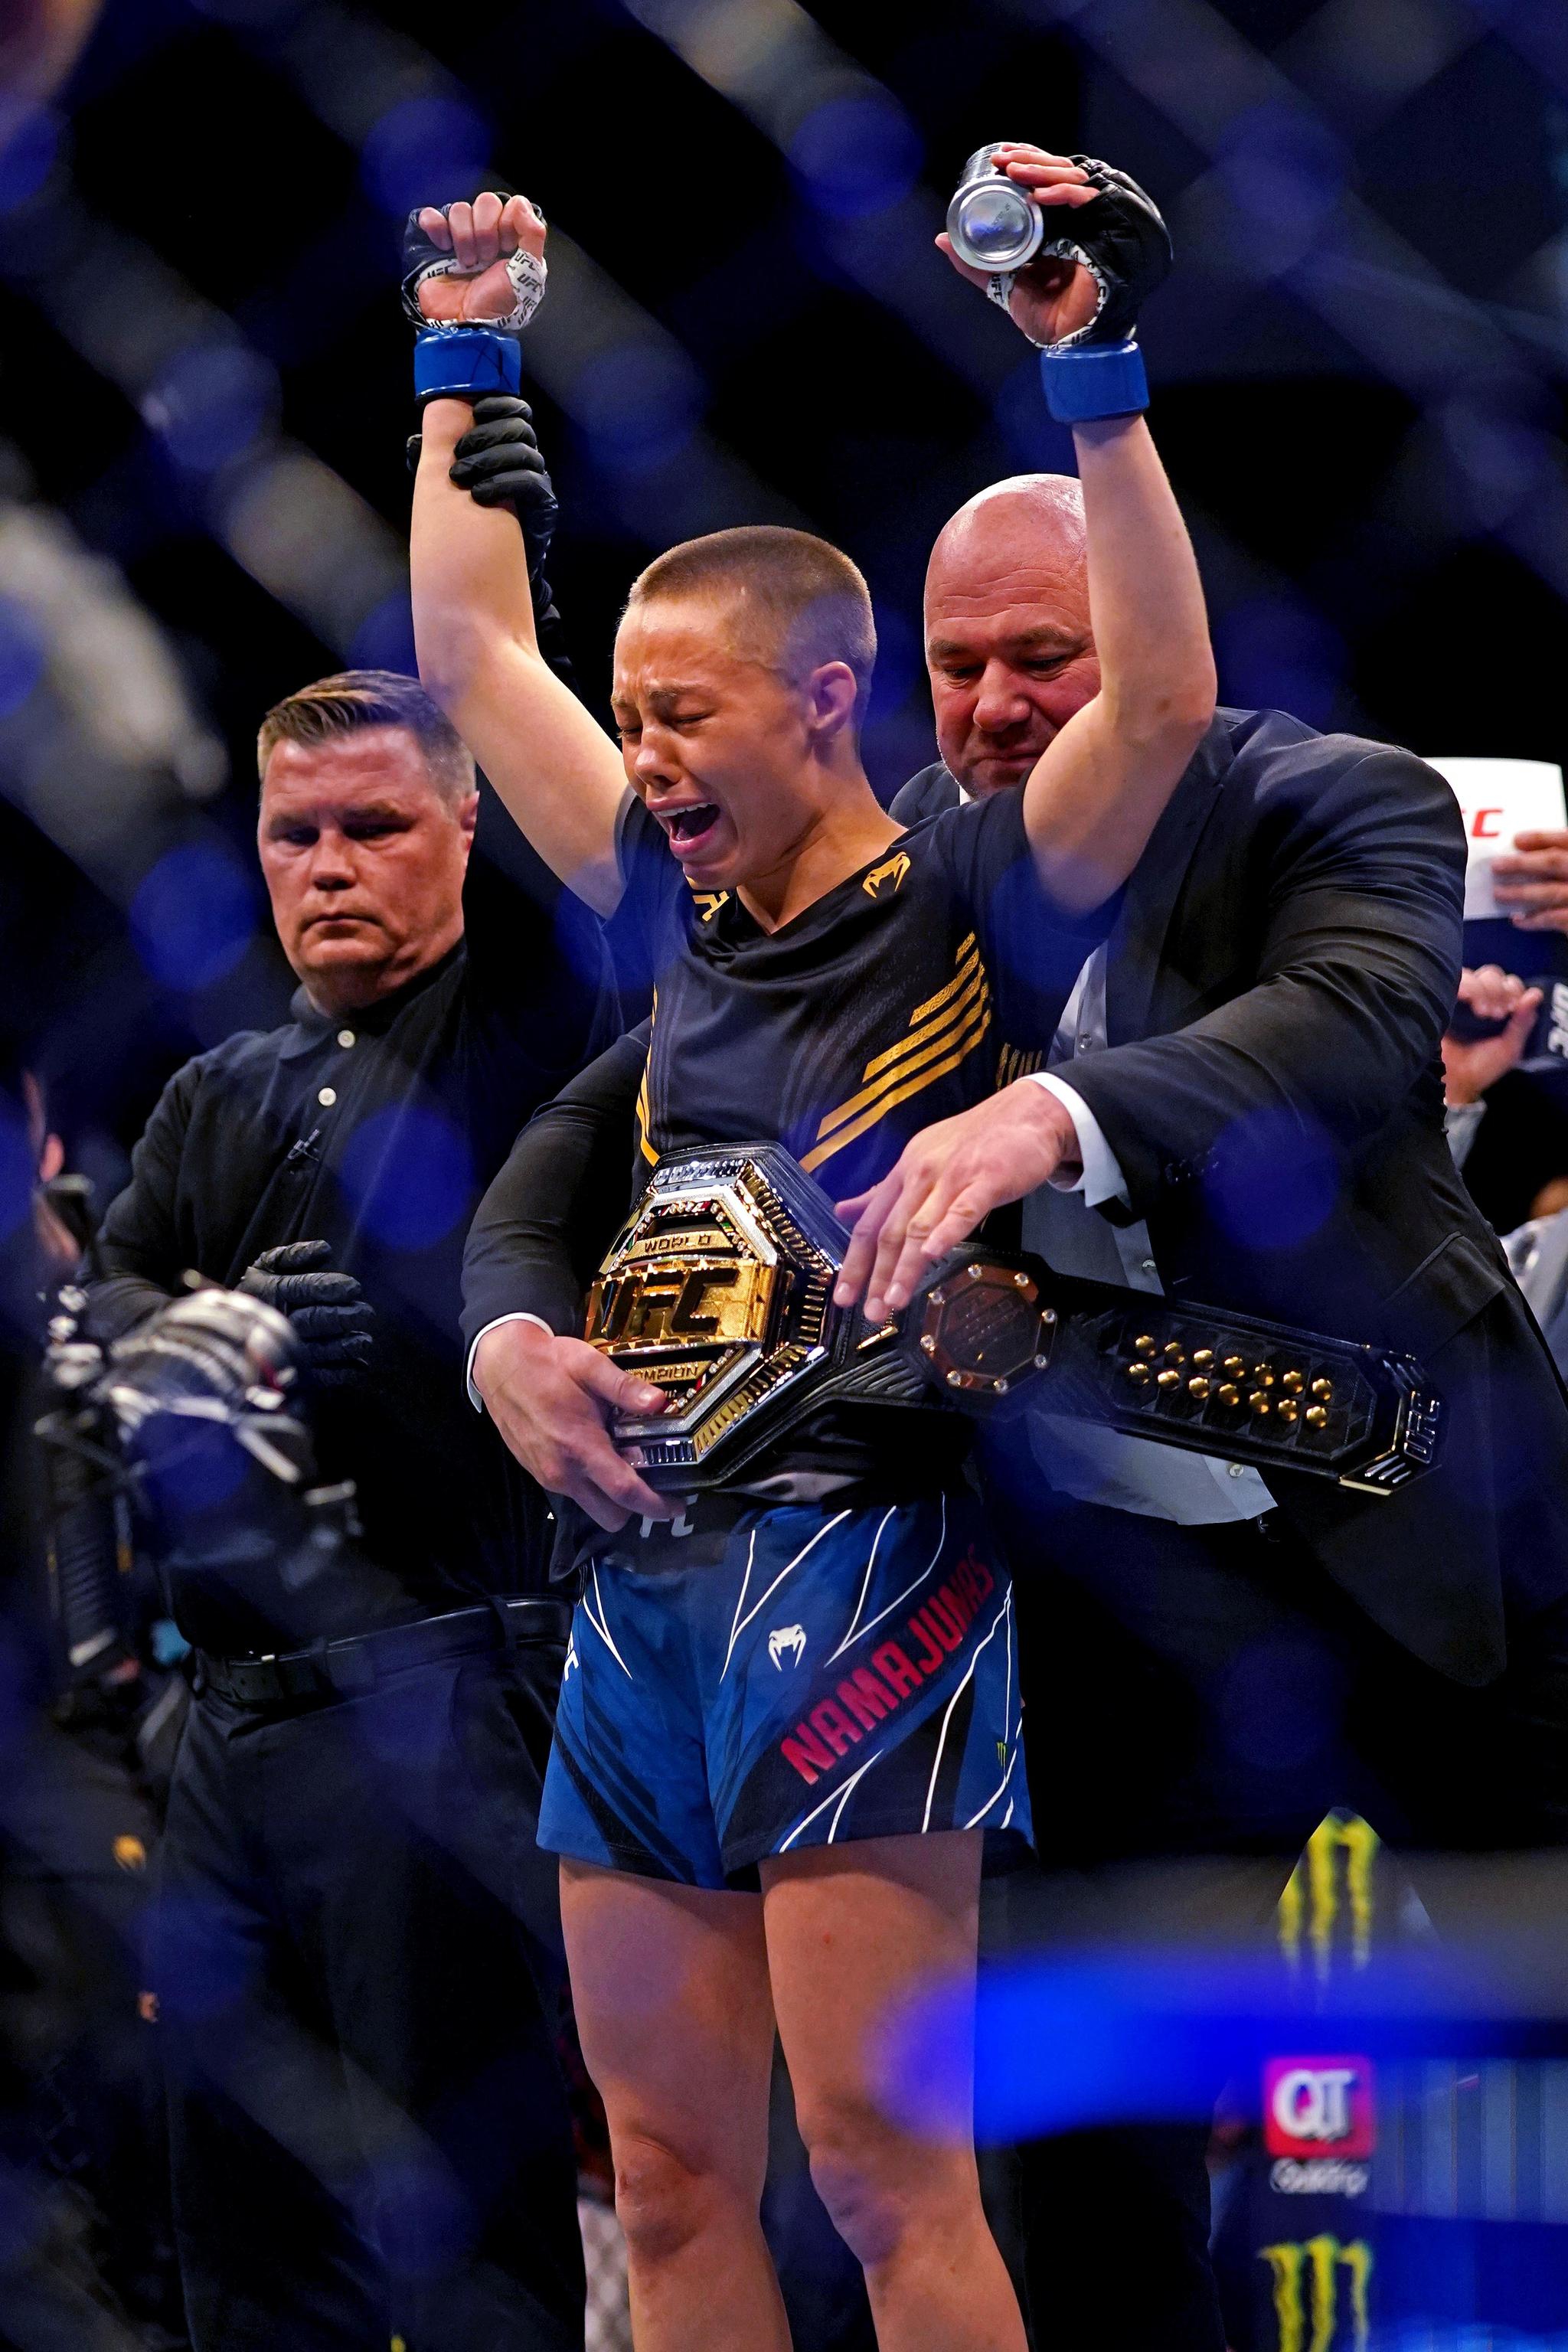 TILBAKE PÅ TOPP: Rose Namajunas får tittelbeltet av UFC-president Dana White etter nattens seier mot Zhang Weili.